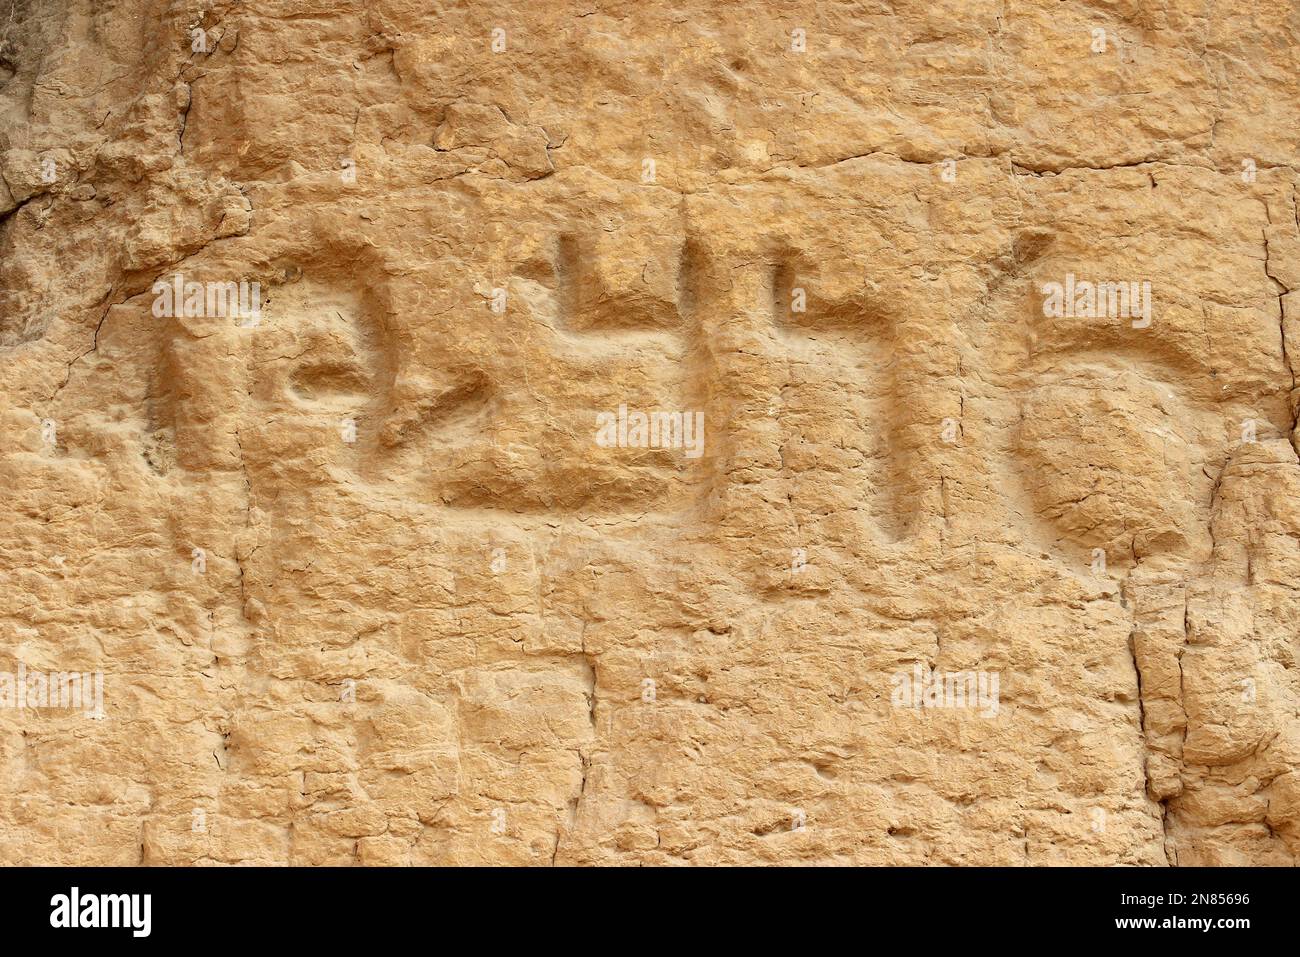 Inscription à l'extérieur de l'ancienne grotte habitation à l'Irak El-Amir Jordanie Banque D'Images